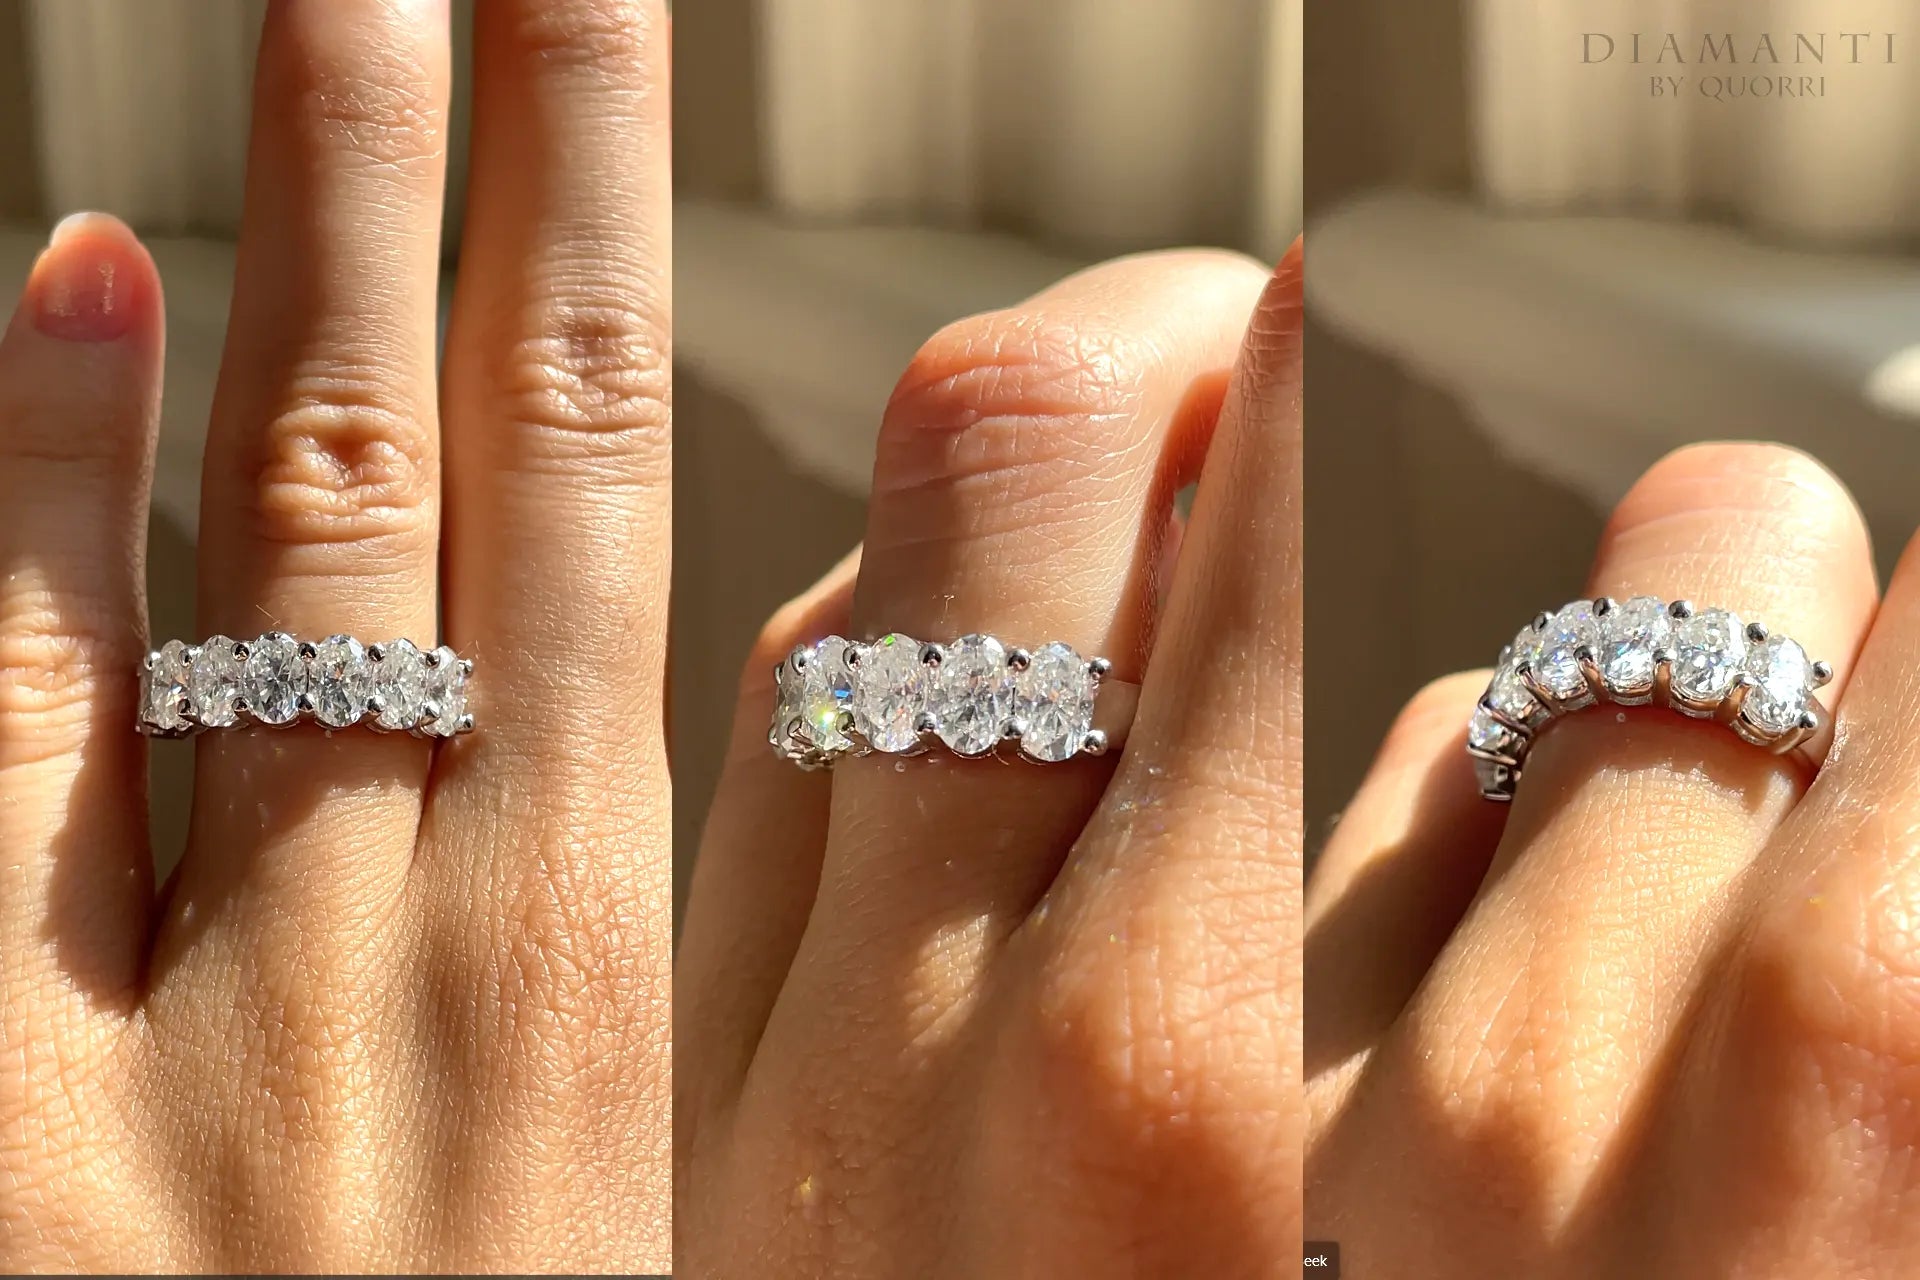 designer platinum 7-stone 4 carat oval diamond wedding or anniversary ring Quorri